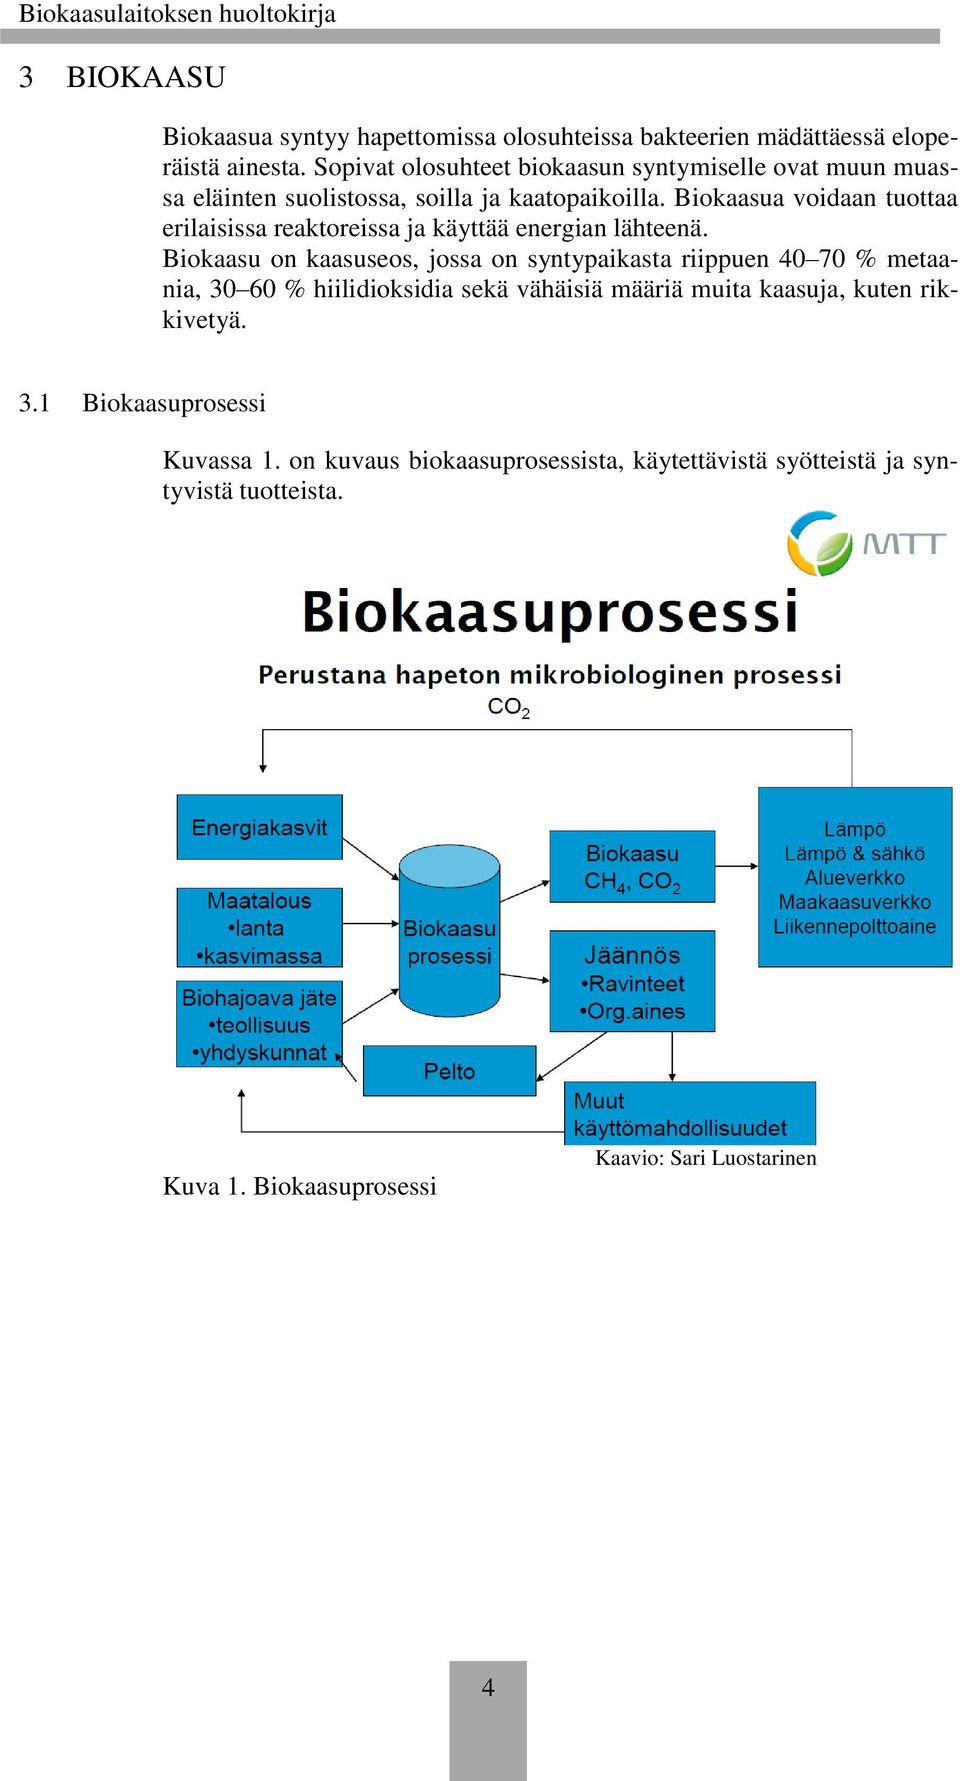 Biokaasua voidaan tuottaa erilaisissa reaktoreissa ja käyttää energian lähteenä.